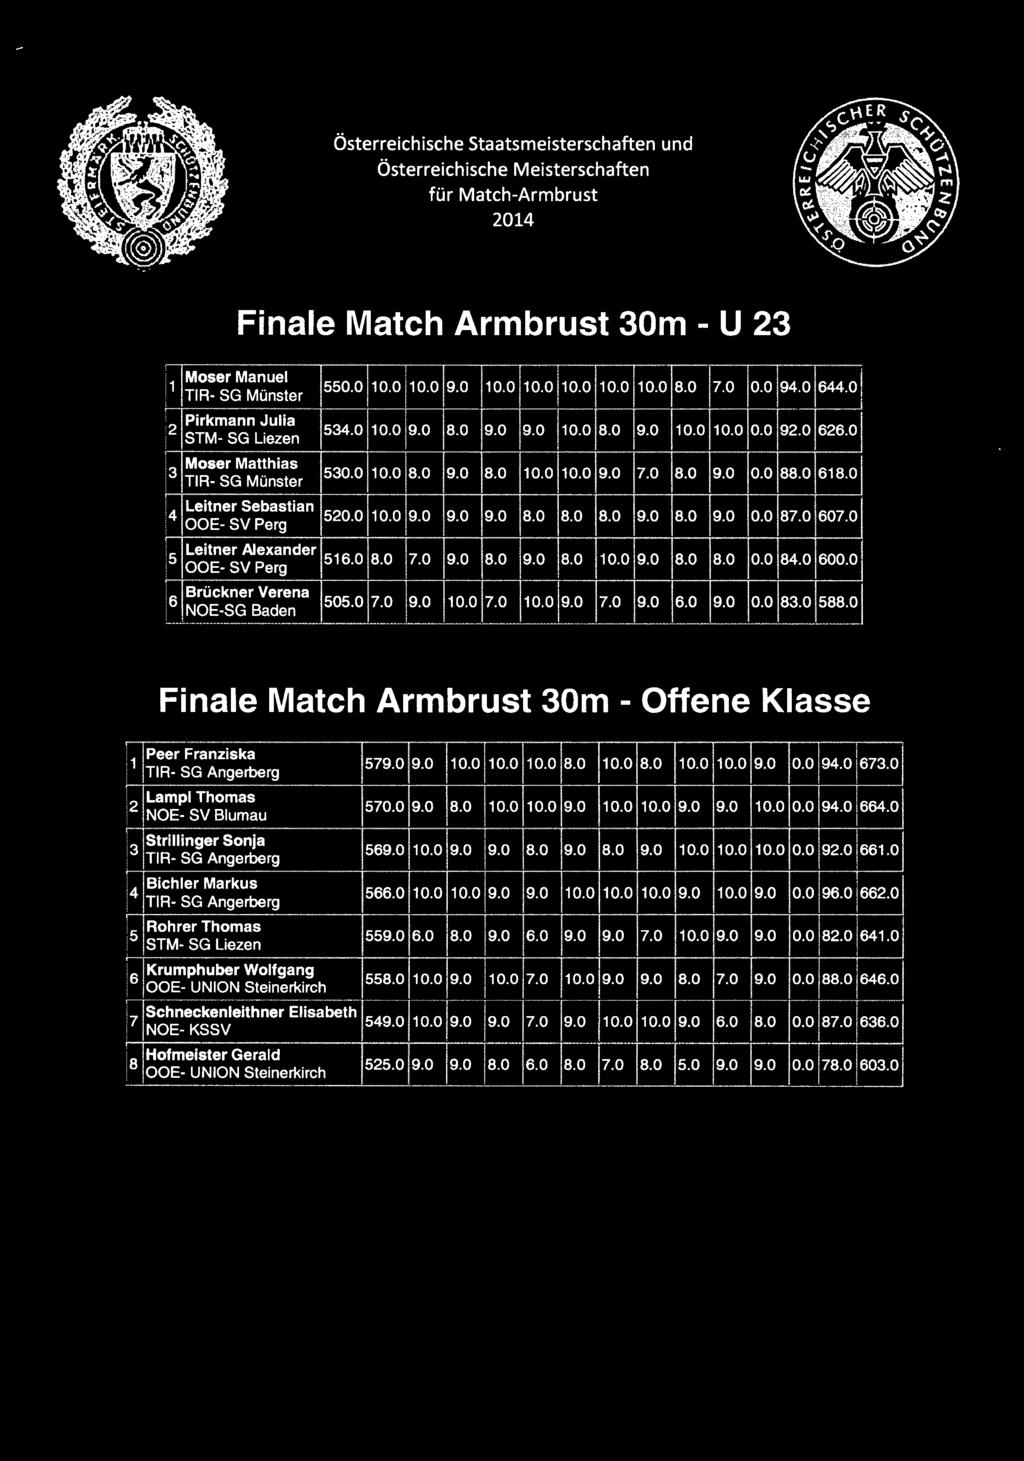 Finale Match Armbrust 30m - U 23 Moser Manuel TIR- SG Münster Pirkmann Julia 2. STM- SG Liezen 550.0 10.0 10.0 9.0 10.0 10.0 10.0 10.0 10.0 8.0 7.0 0.0 90 640 530 10.0 9.0 8.0 9.0 9.0 10.0 10.0 0.0 90 620 Moser Matthias 3 530.